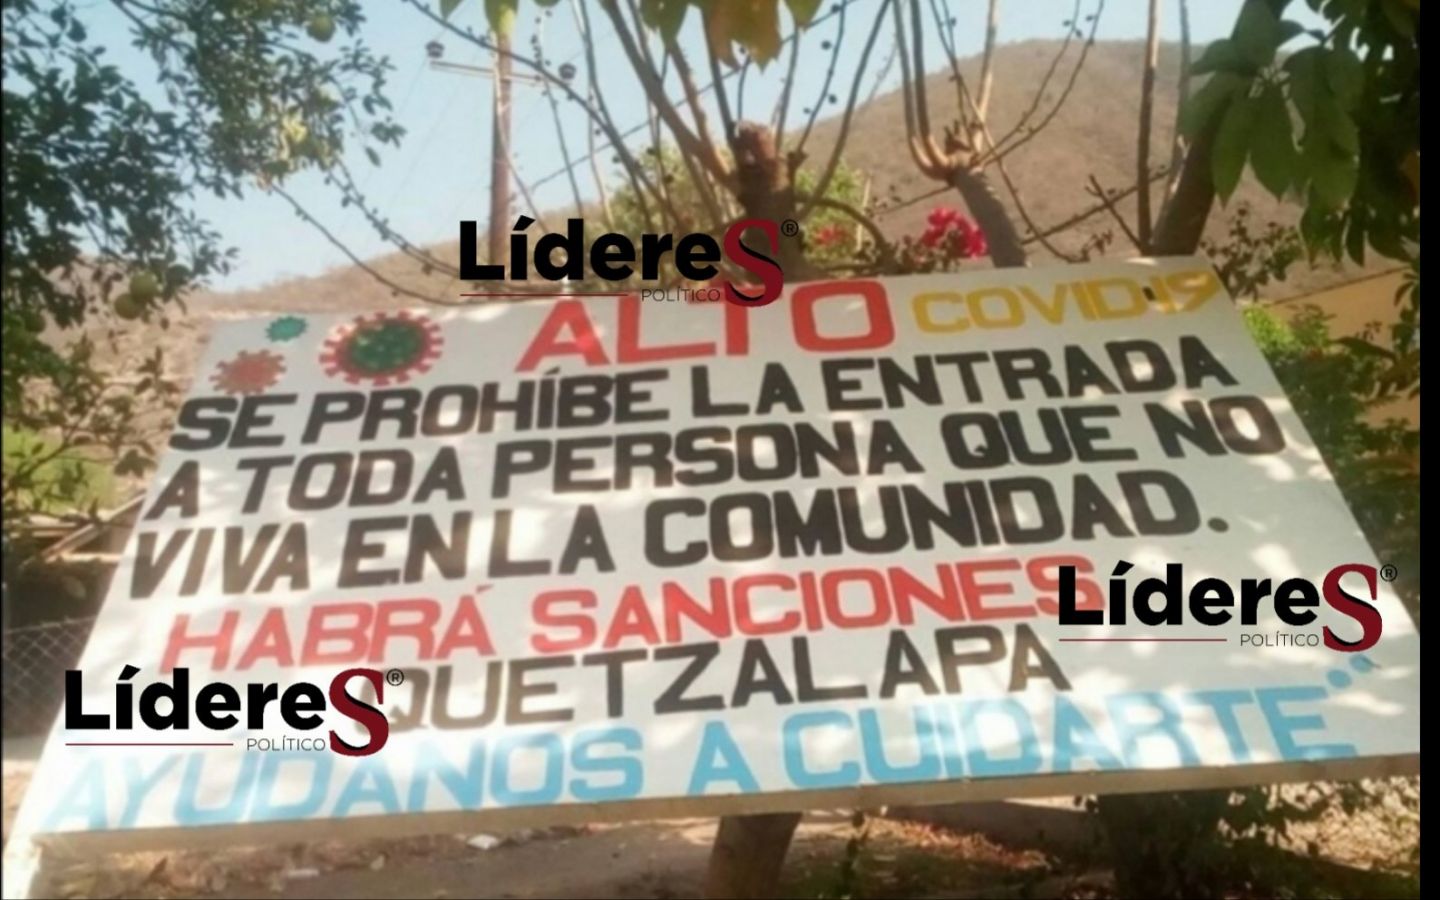 Ahora en Quetzalapa prohíben ingreso a comunidad en Semana Santa por Covid-19